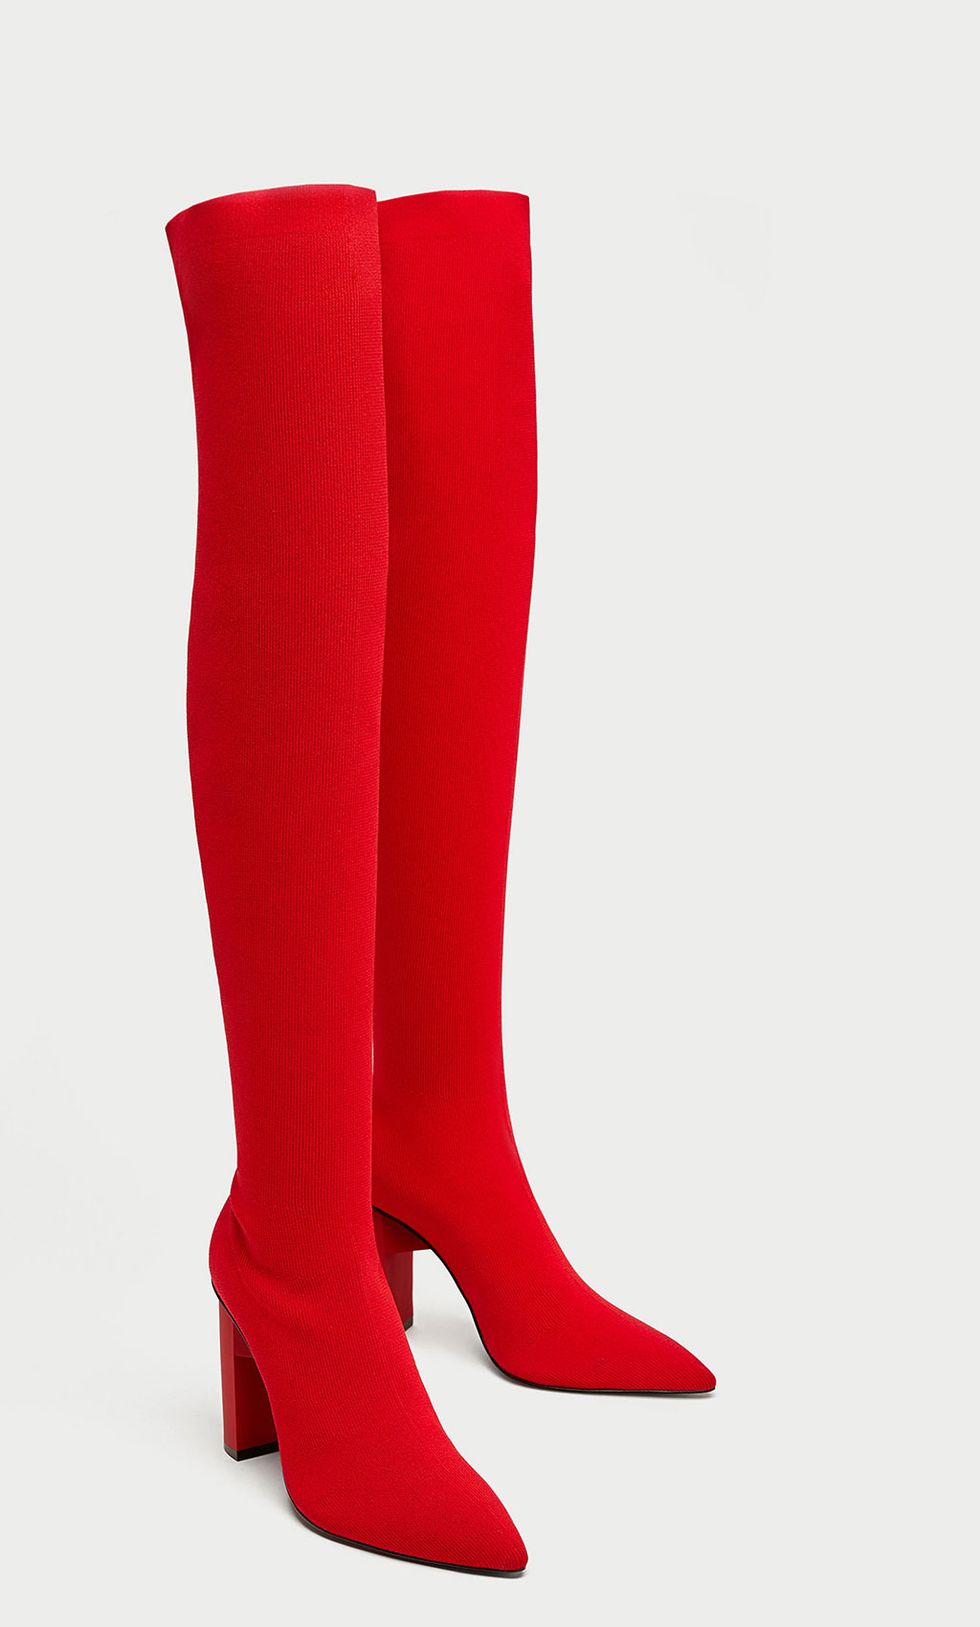 Footwear, Red, Boot, Knee-high boot, Shoe, High heels, Joint, Leg, Carmine, Human leg, 